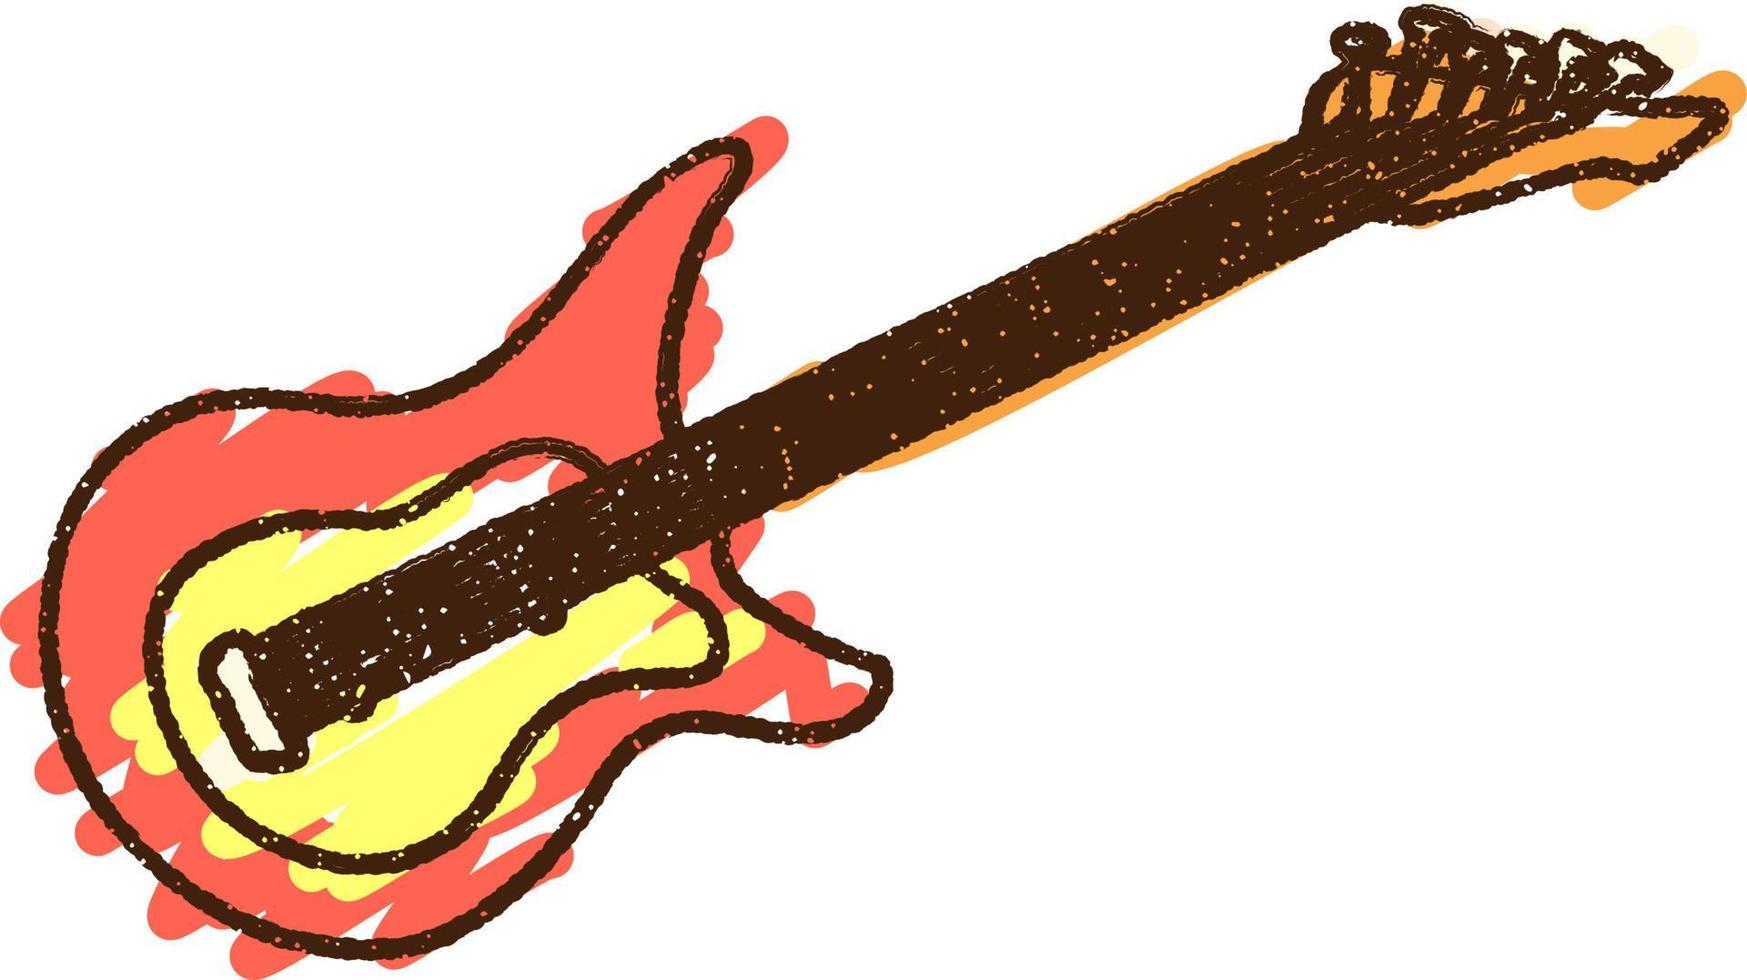 disegno a gessetto di chitarra elettrica vettore